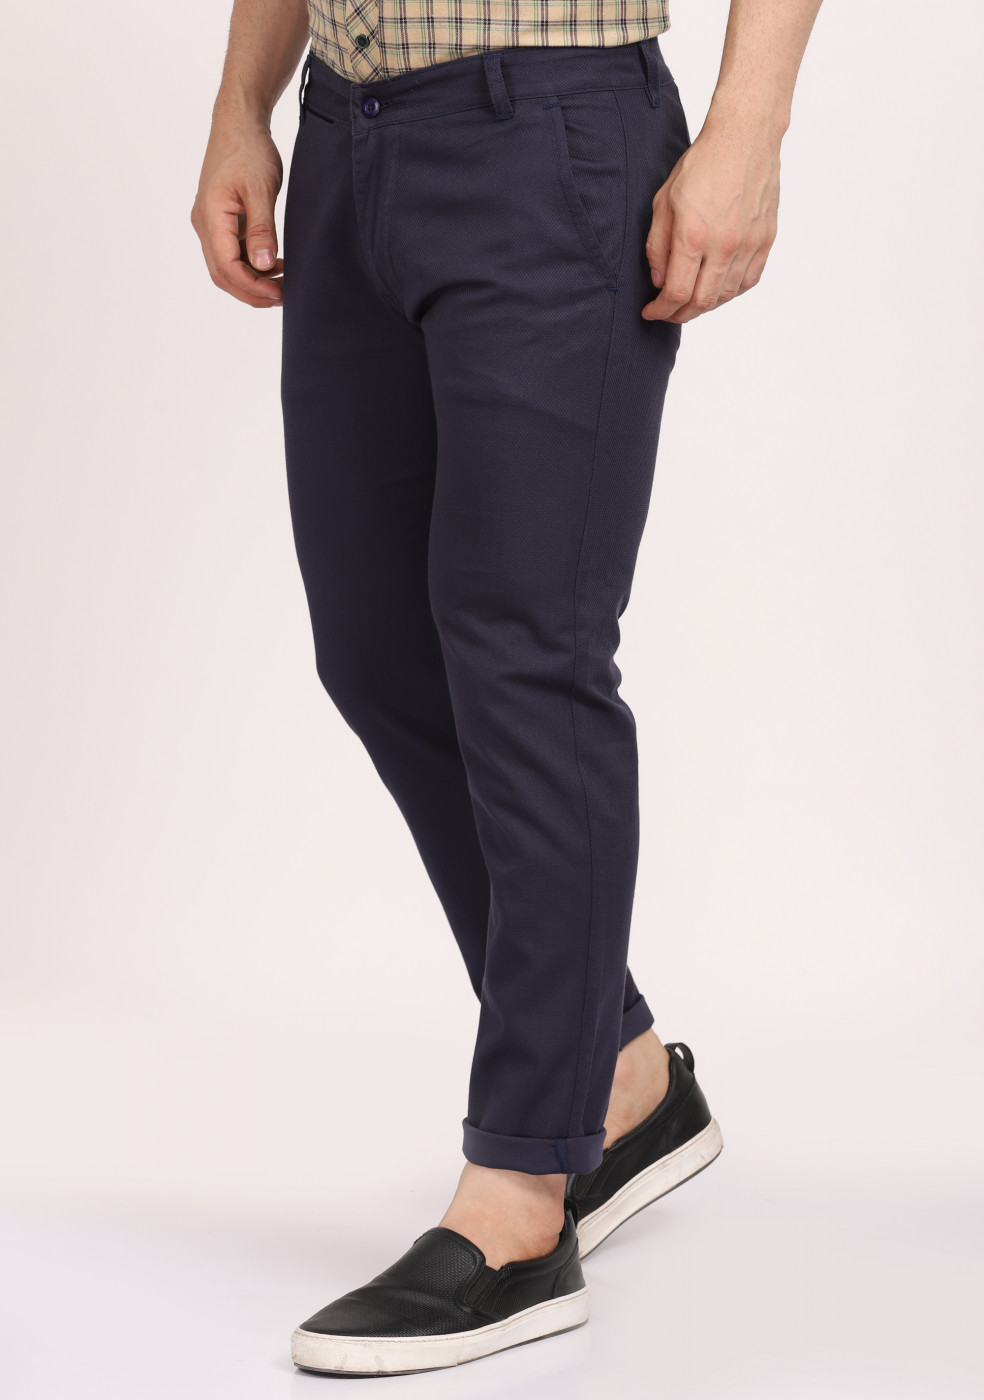 ASHTOM Navy Blue Formal Cotton Trouser Regular Fit For Men